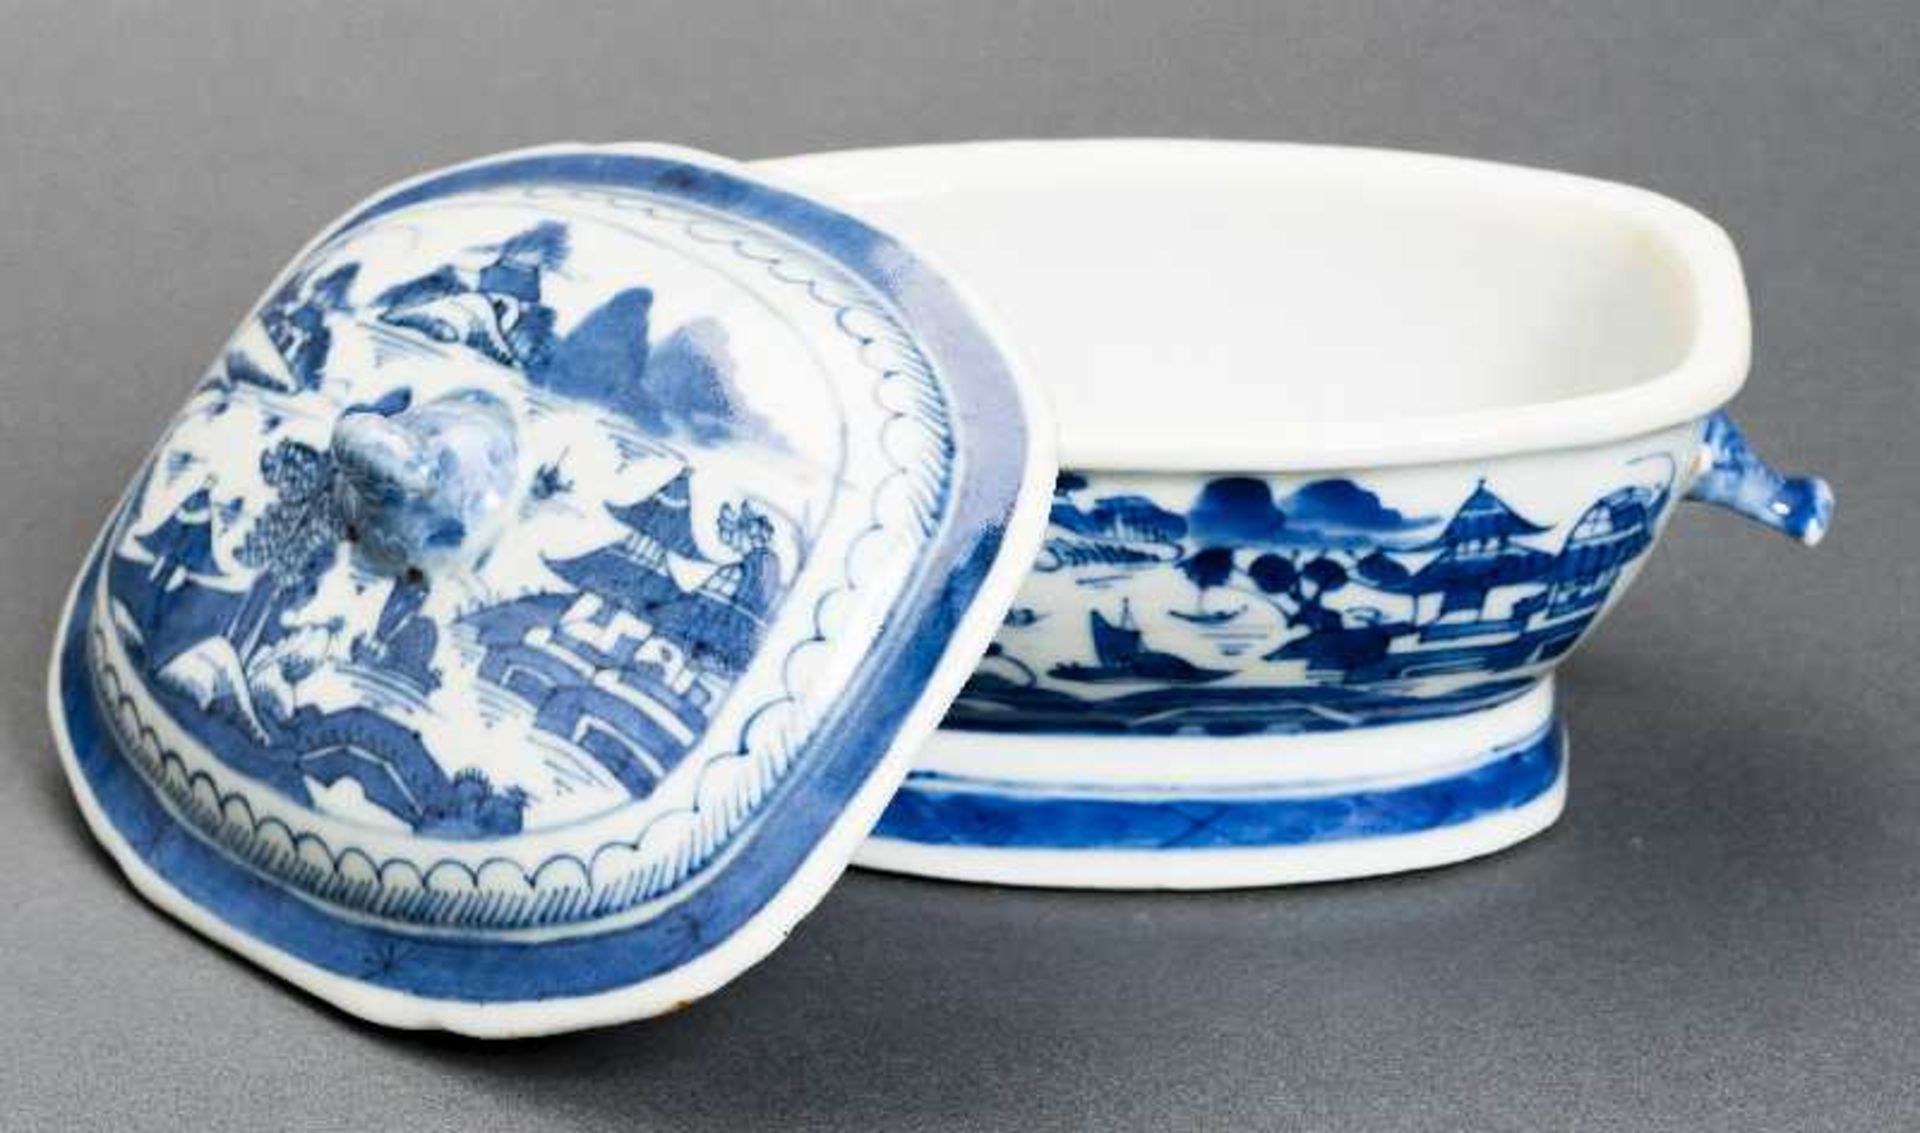 DECKELSCHALE Blauweiß-Porzellan. China, Qing-Dynastie, 19. Jh. Diese sehr ansprechende oval- - Bild 6 aus 6